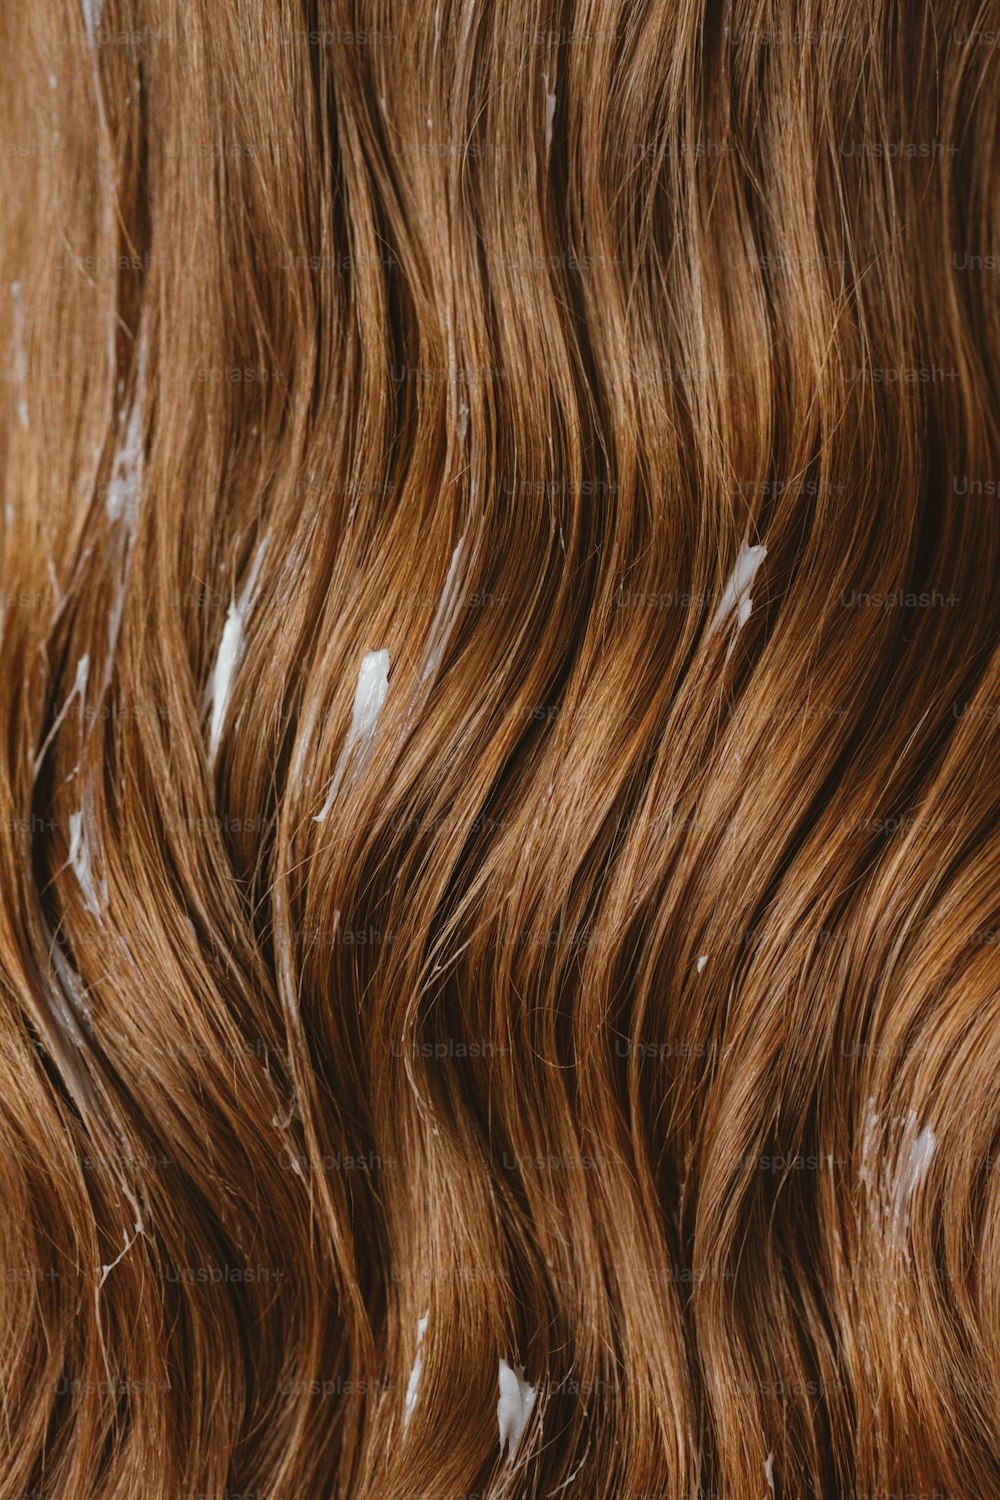 Un primer plano de un cabello castaño ondulado